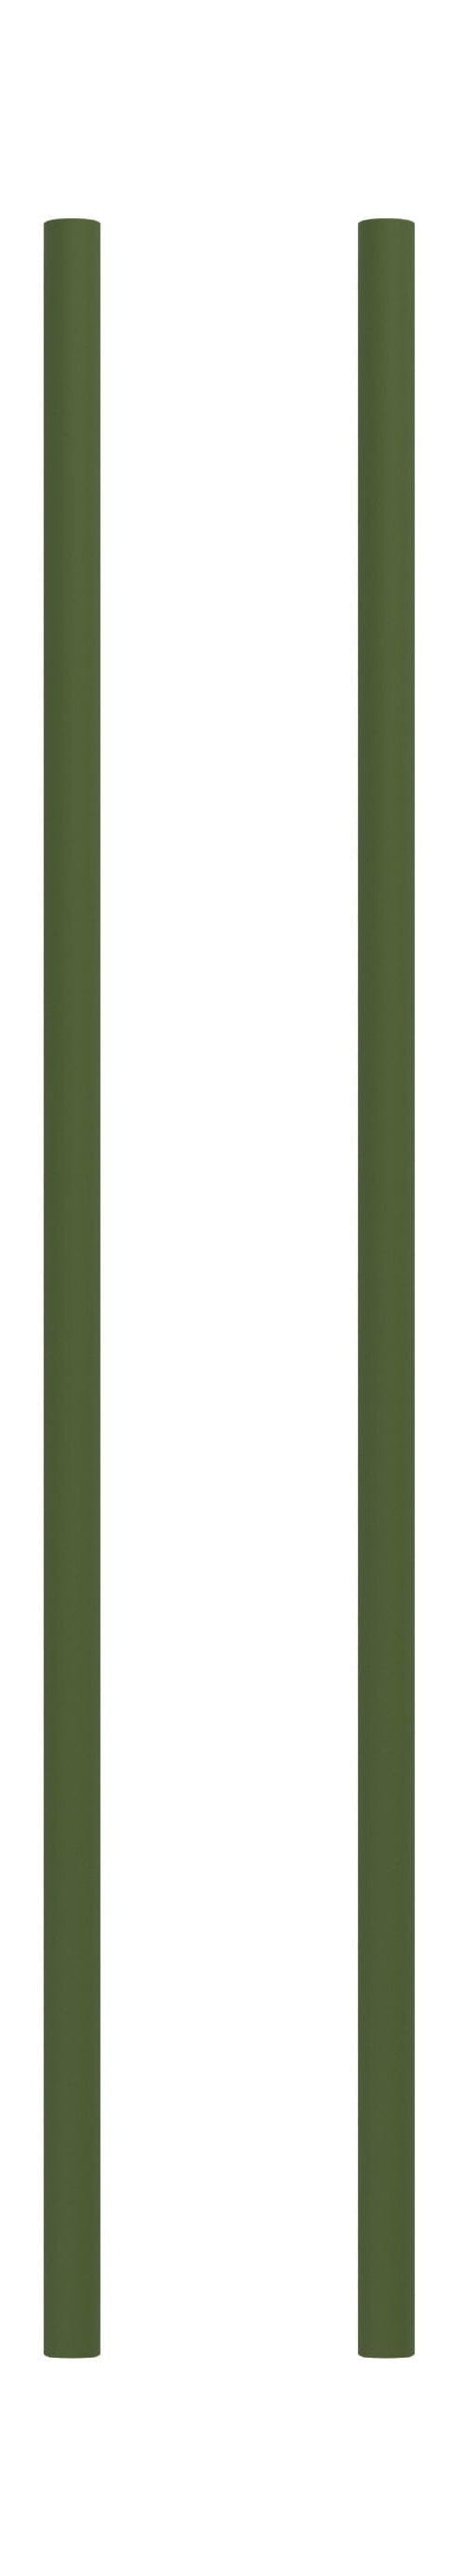 Moebe hyllsystem/vägghyllande ben 65 cm, tallgrön